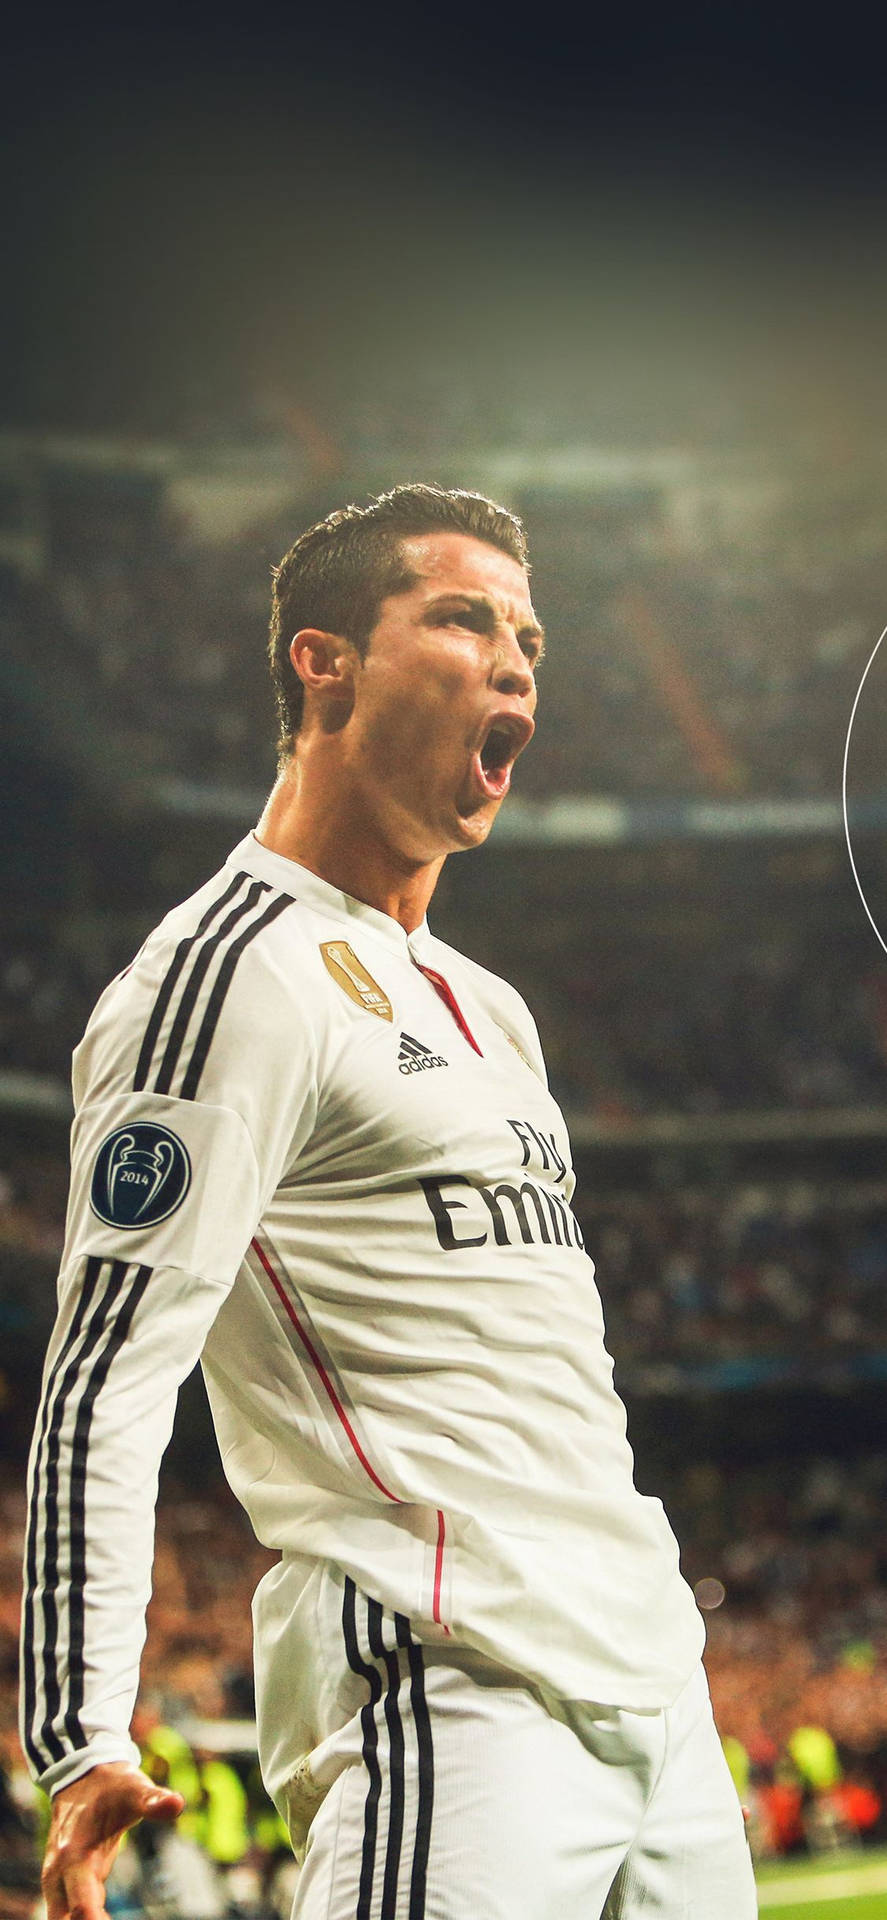 Erhitztescristiano Ronaldo Iphone Wallpaper